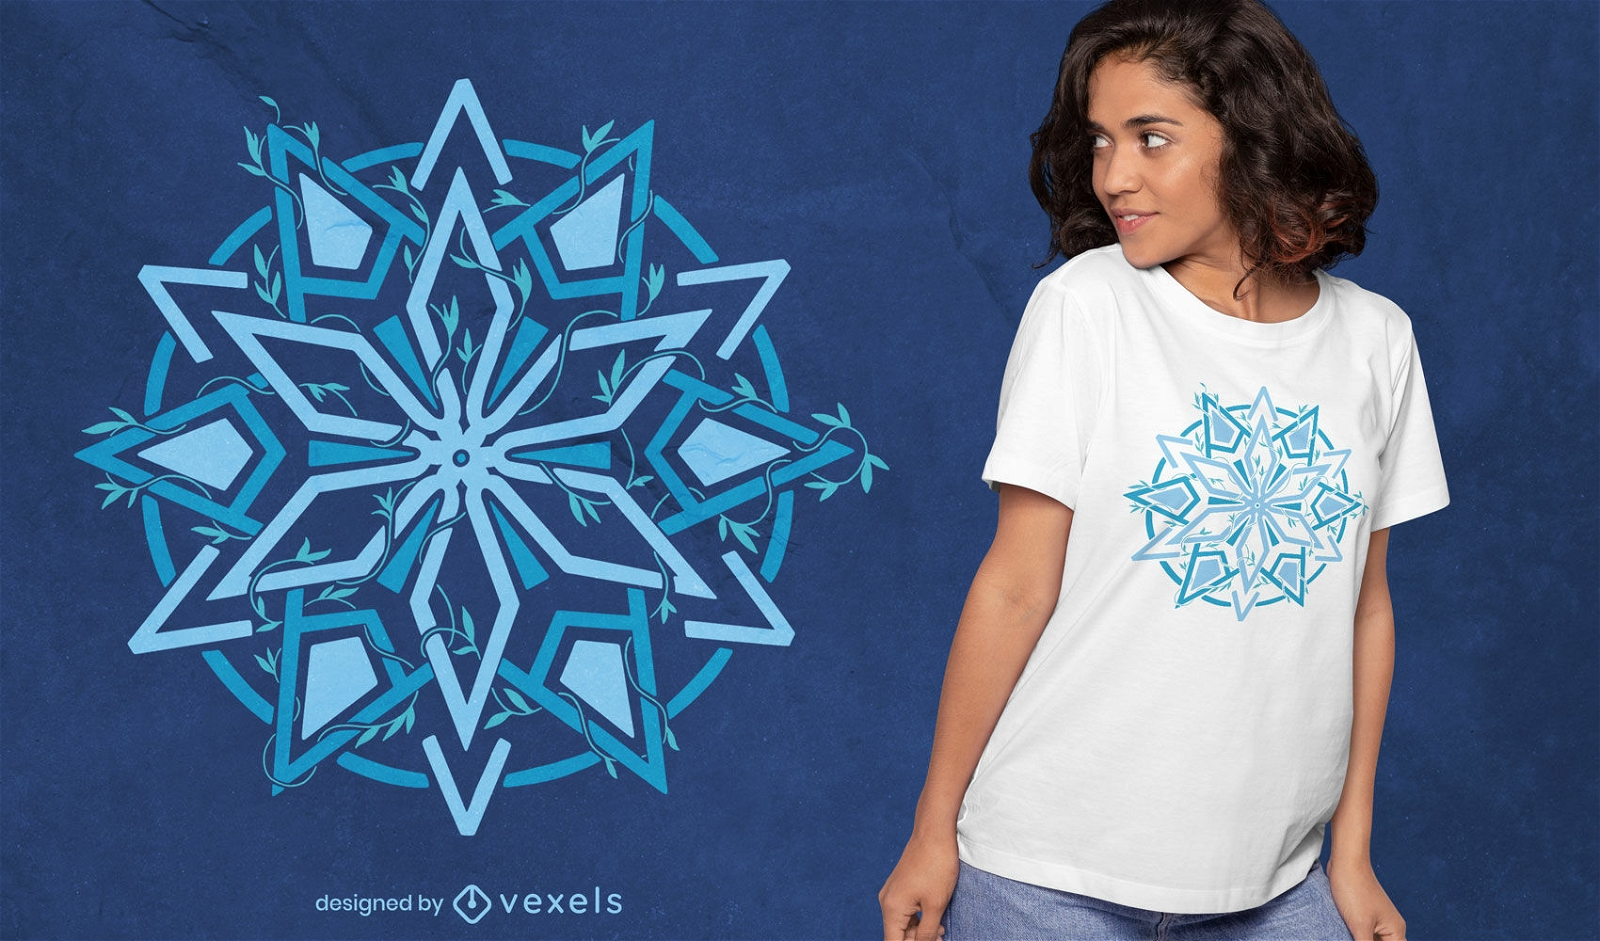 Design geom?trico de camiseta estrela floral